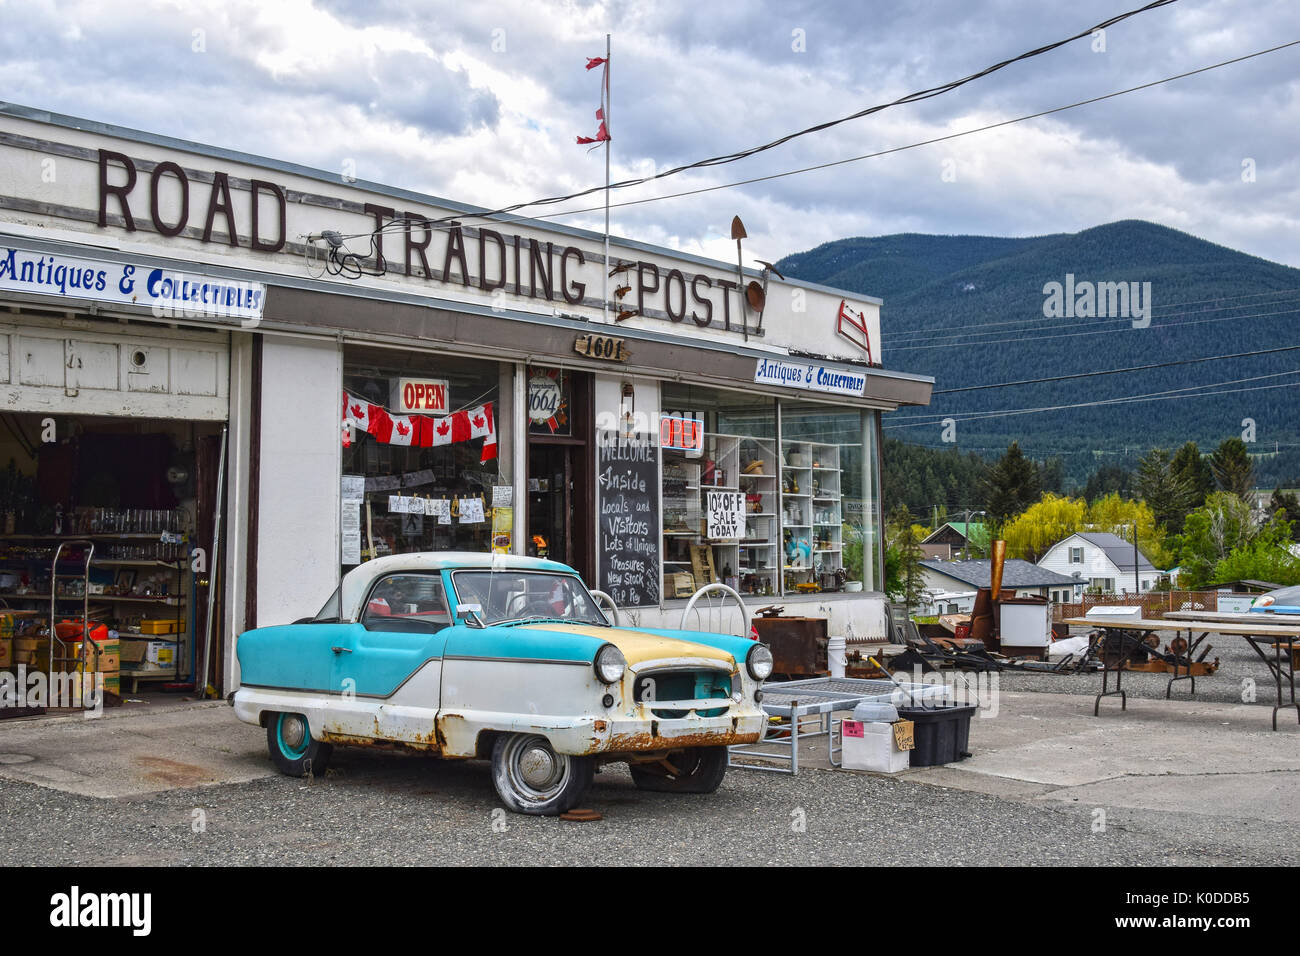 CLINTON, BC, Canadá - 23 de mayo de 2017: North Road Trading Post en Clinton, British Columbia. La tienda ofrece antigüedades y coleccionables. Foto de stock